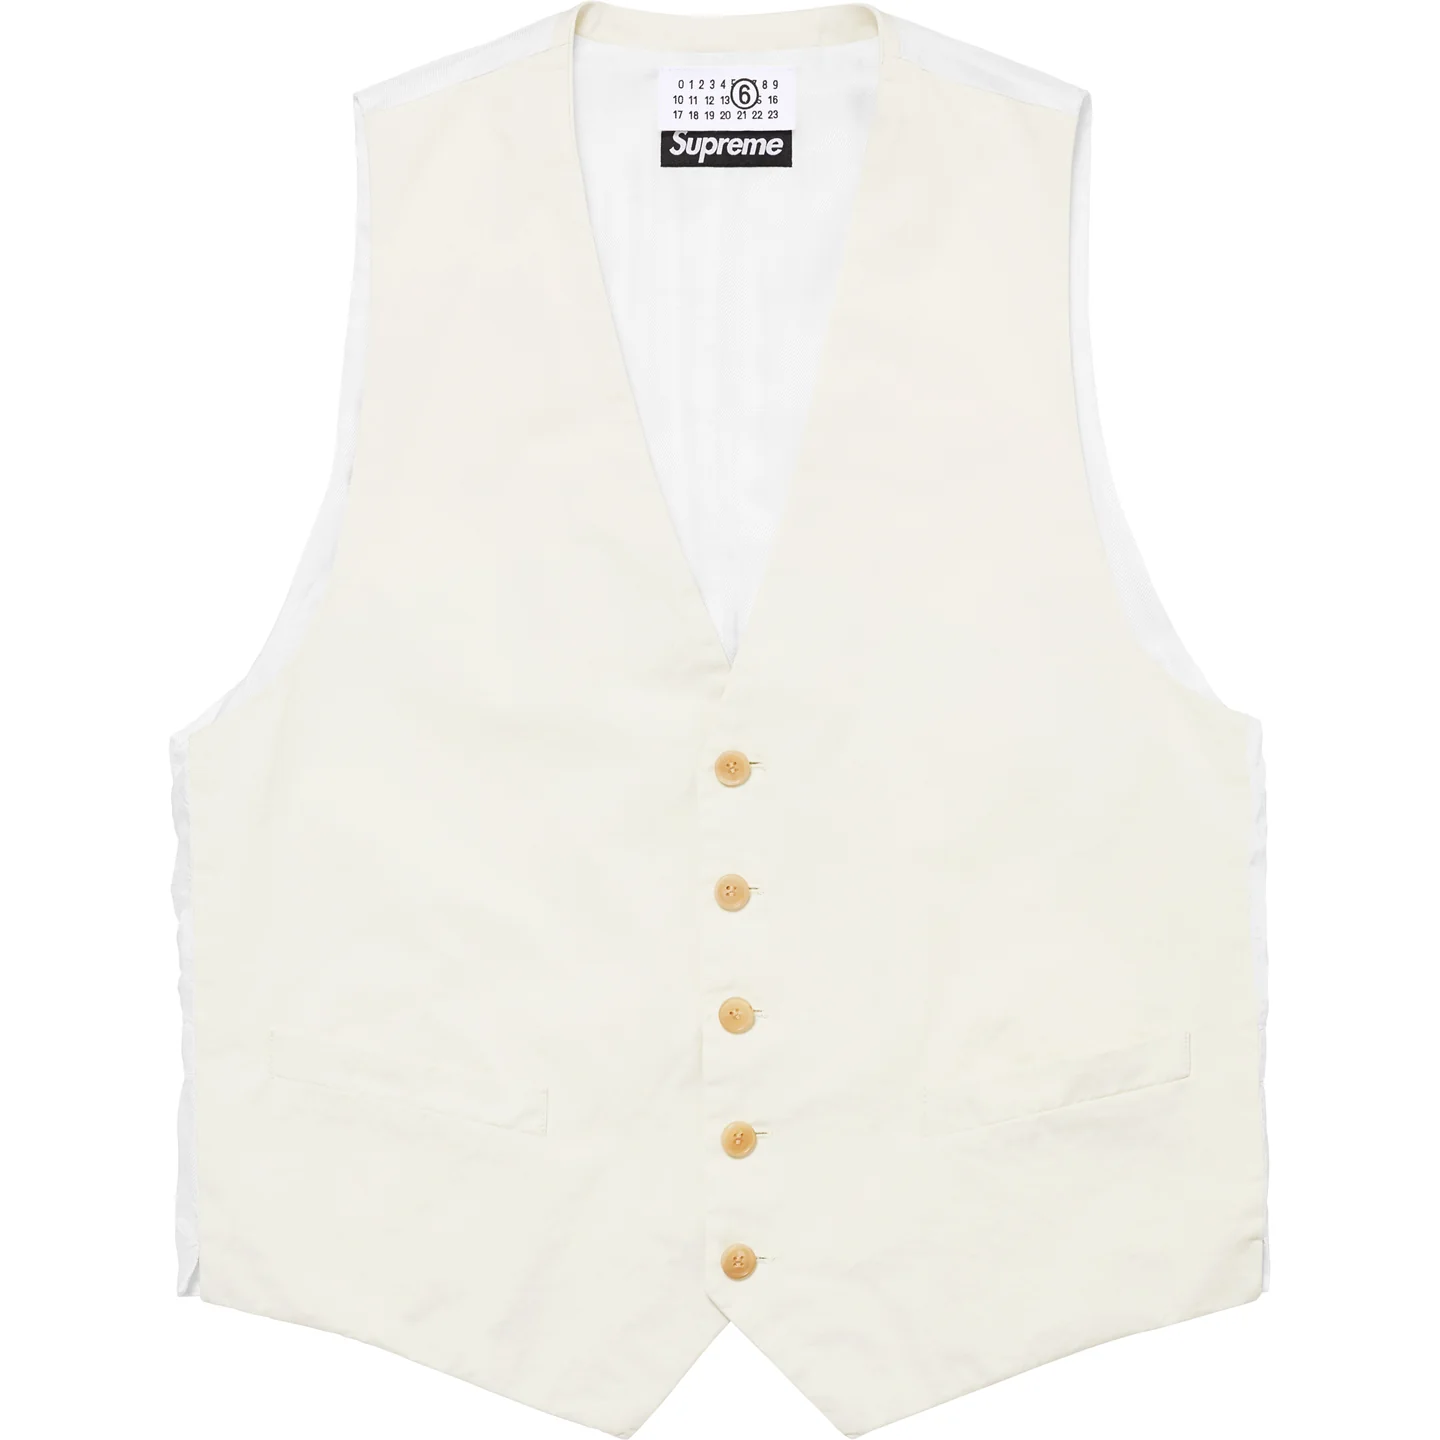 Supreme®/MM6 Maison Margiela Washed Cotton Suit Vest | Supreme 24ss